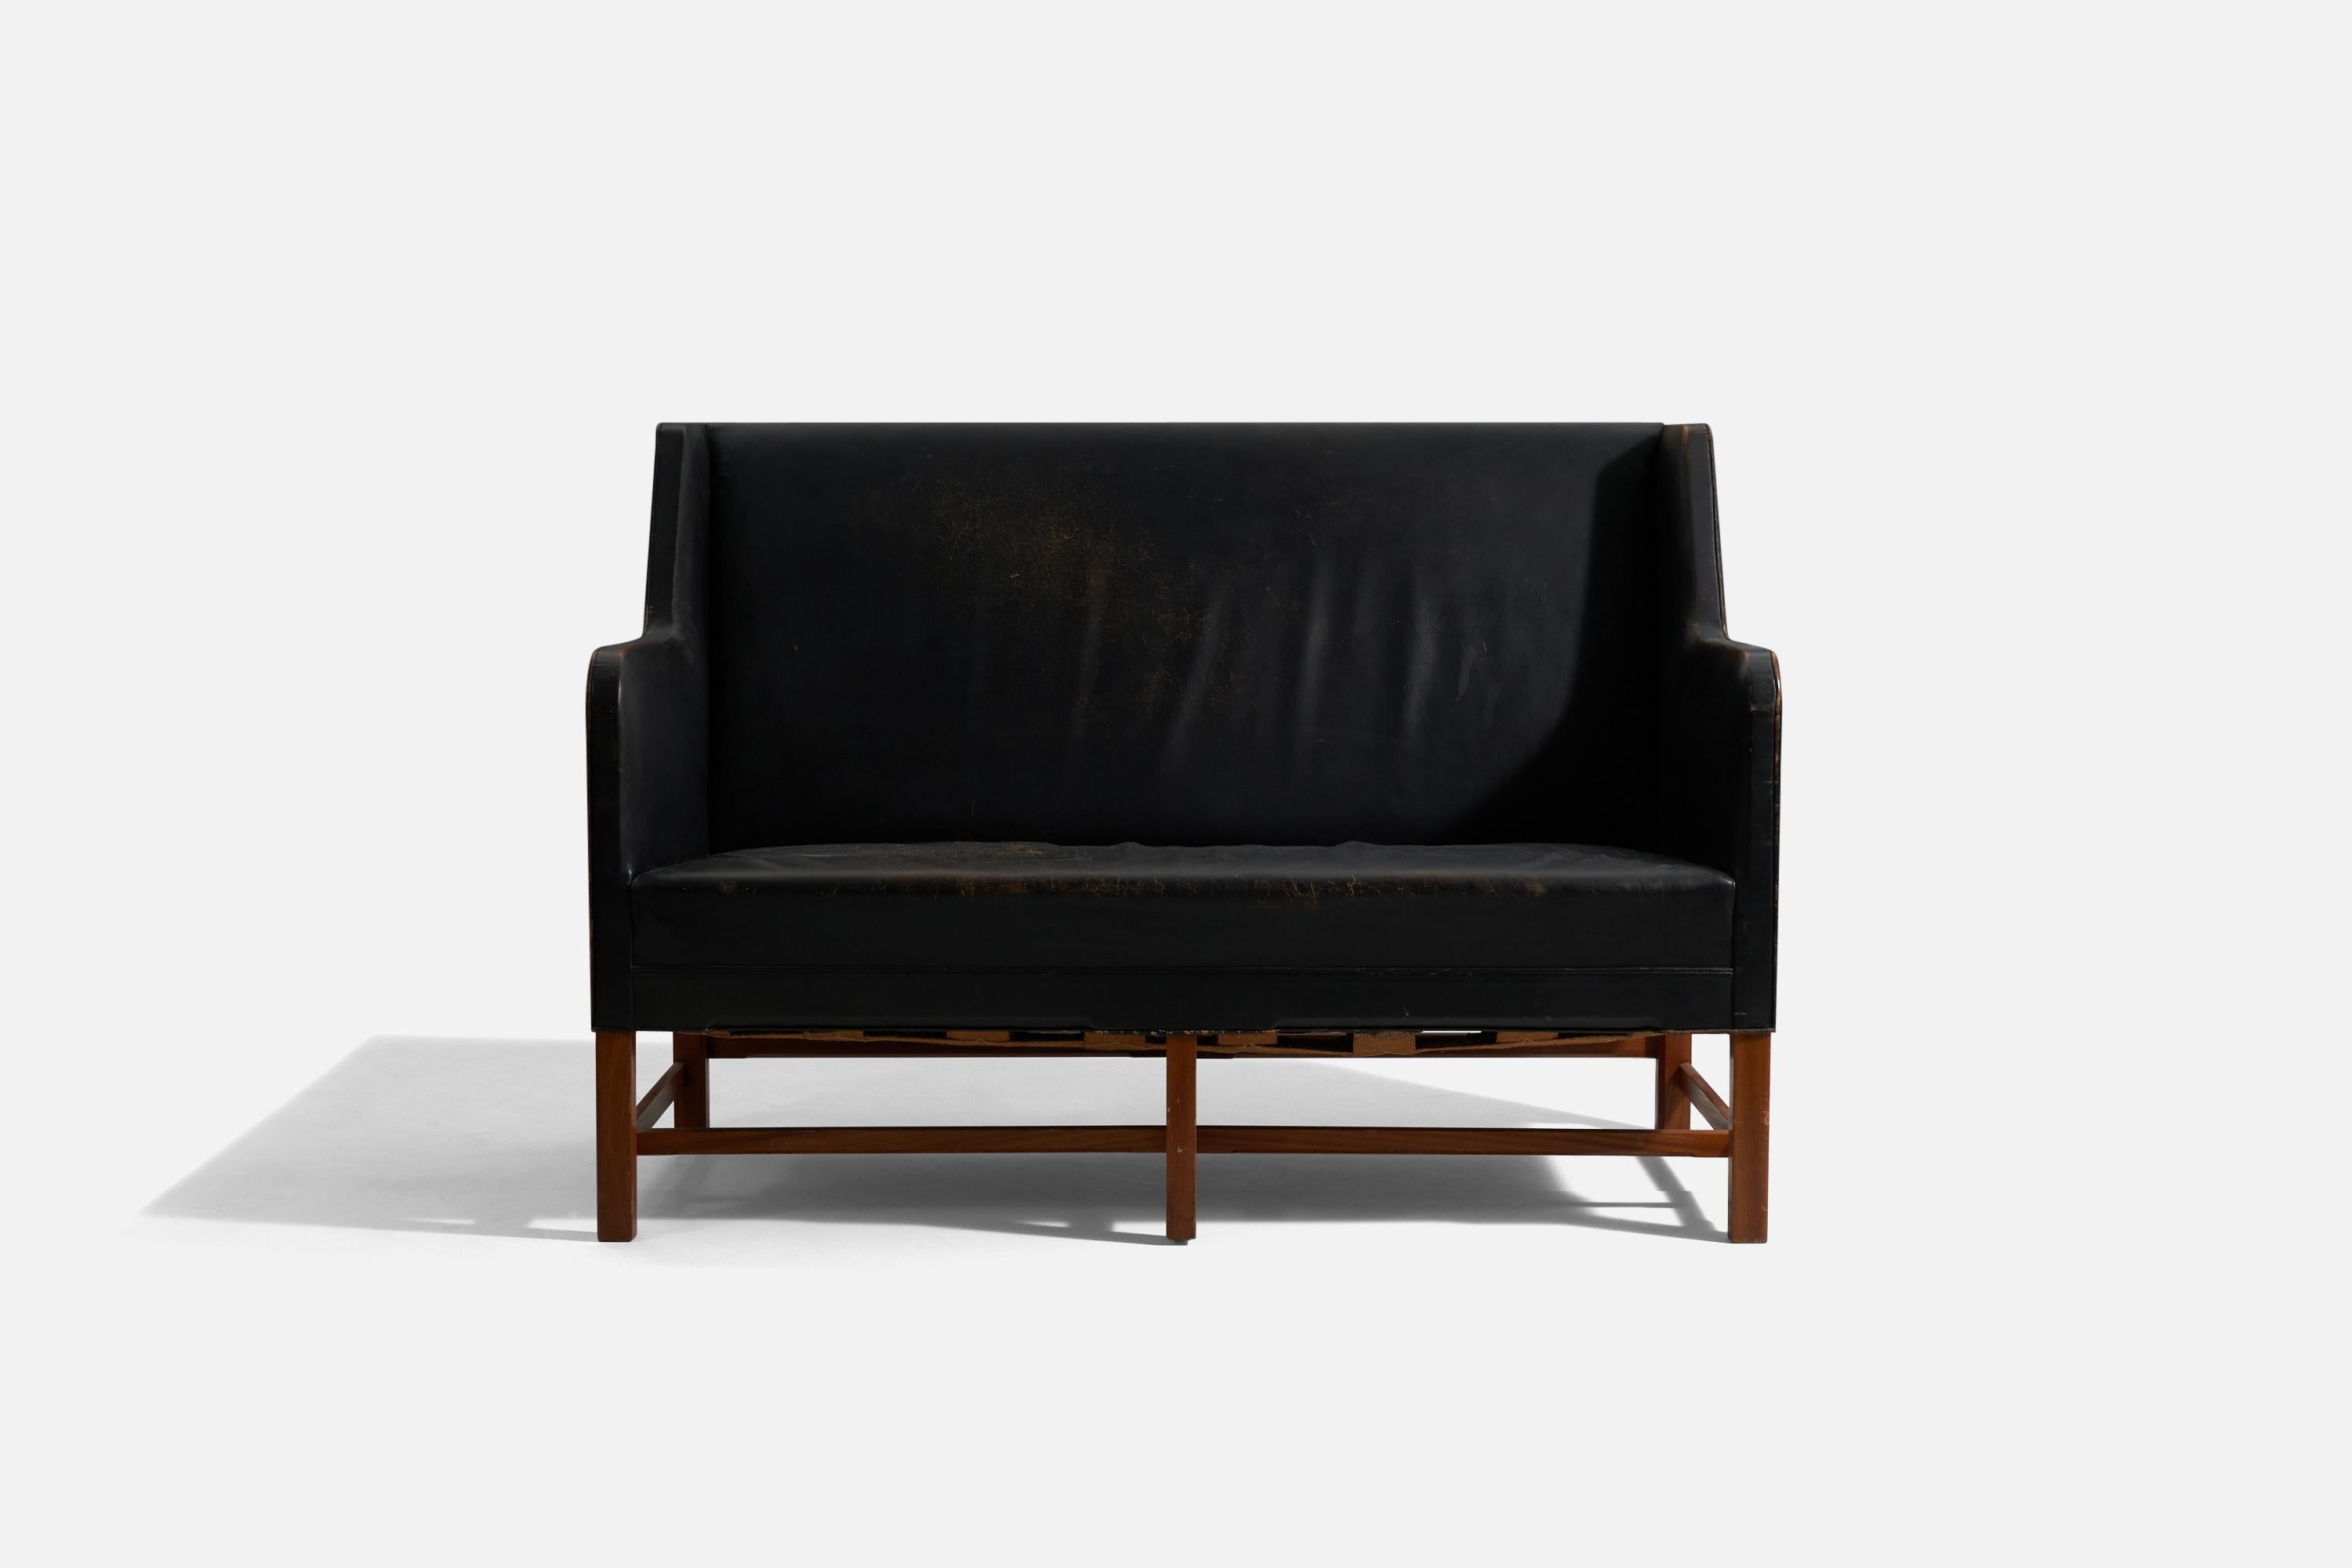 Canapé à deux places d'origine. Dessiné par Kaare Klint, produit par l'ébéniste Rud Rasmussen, Danemark, c. 1940s. Modèle 5011, conçu en 1935.

Pieds en acajou.